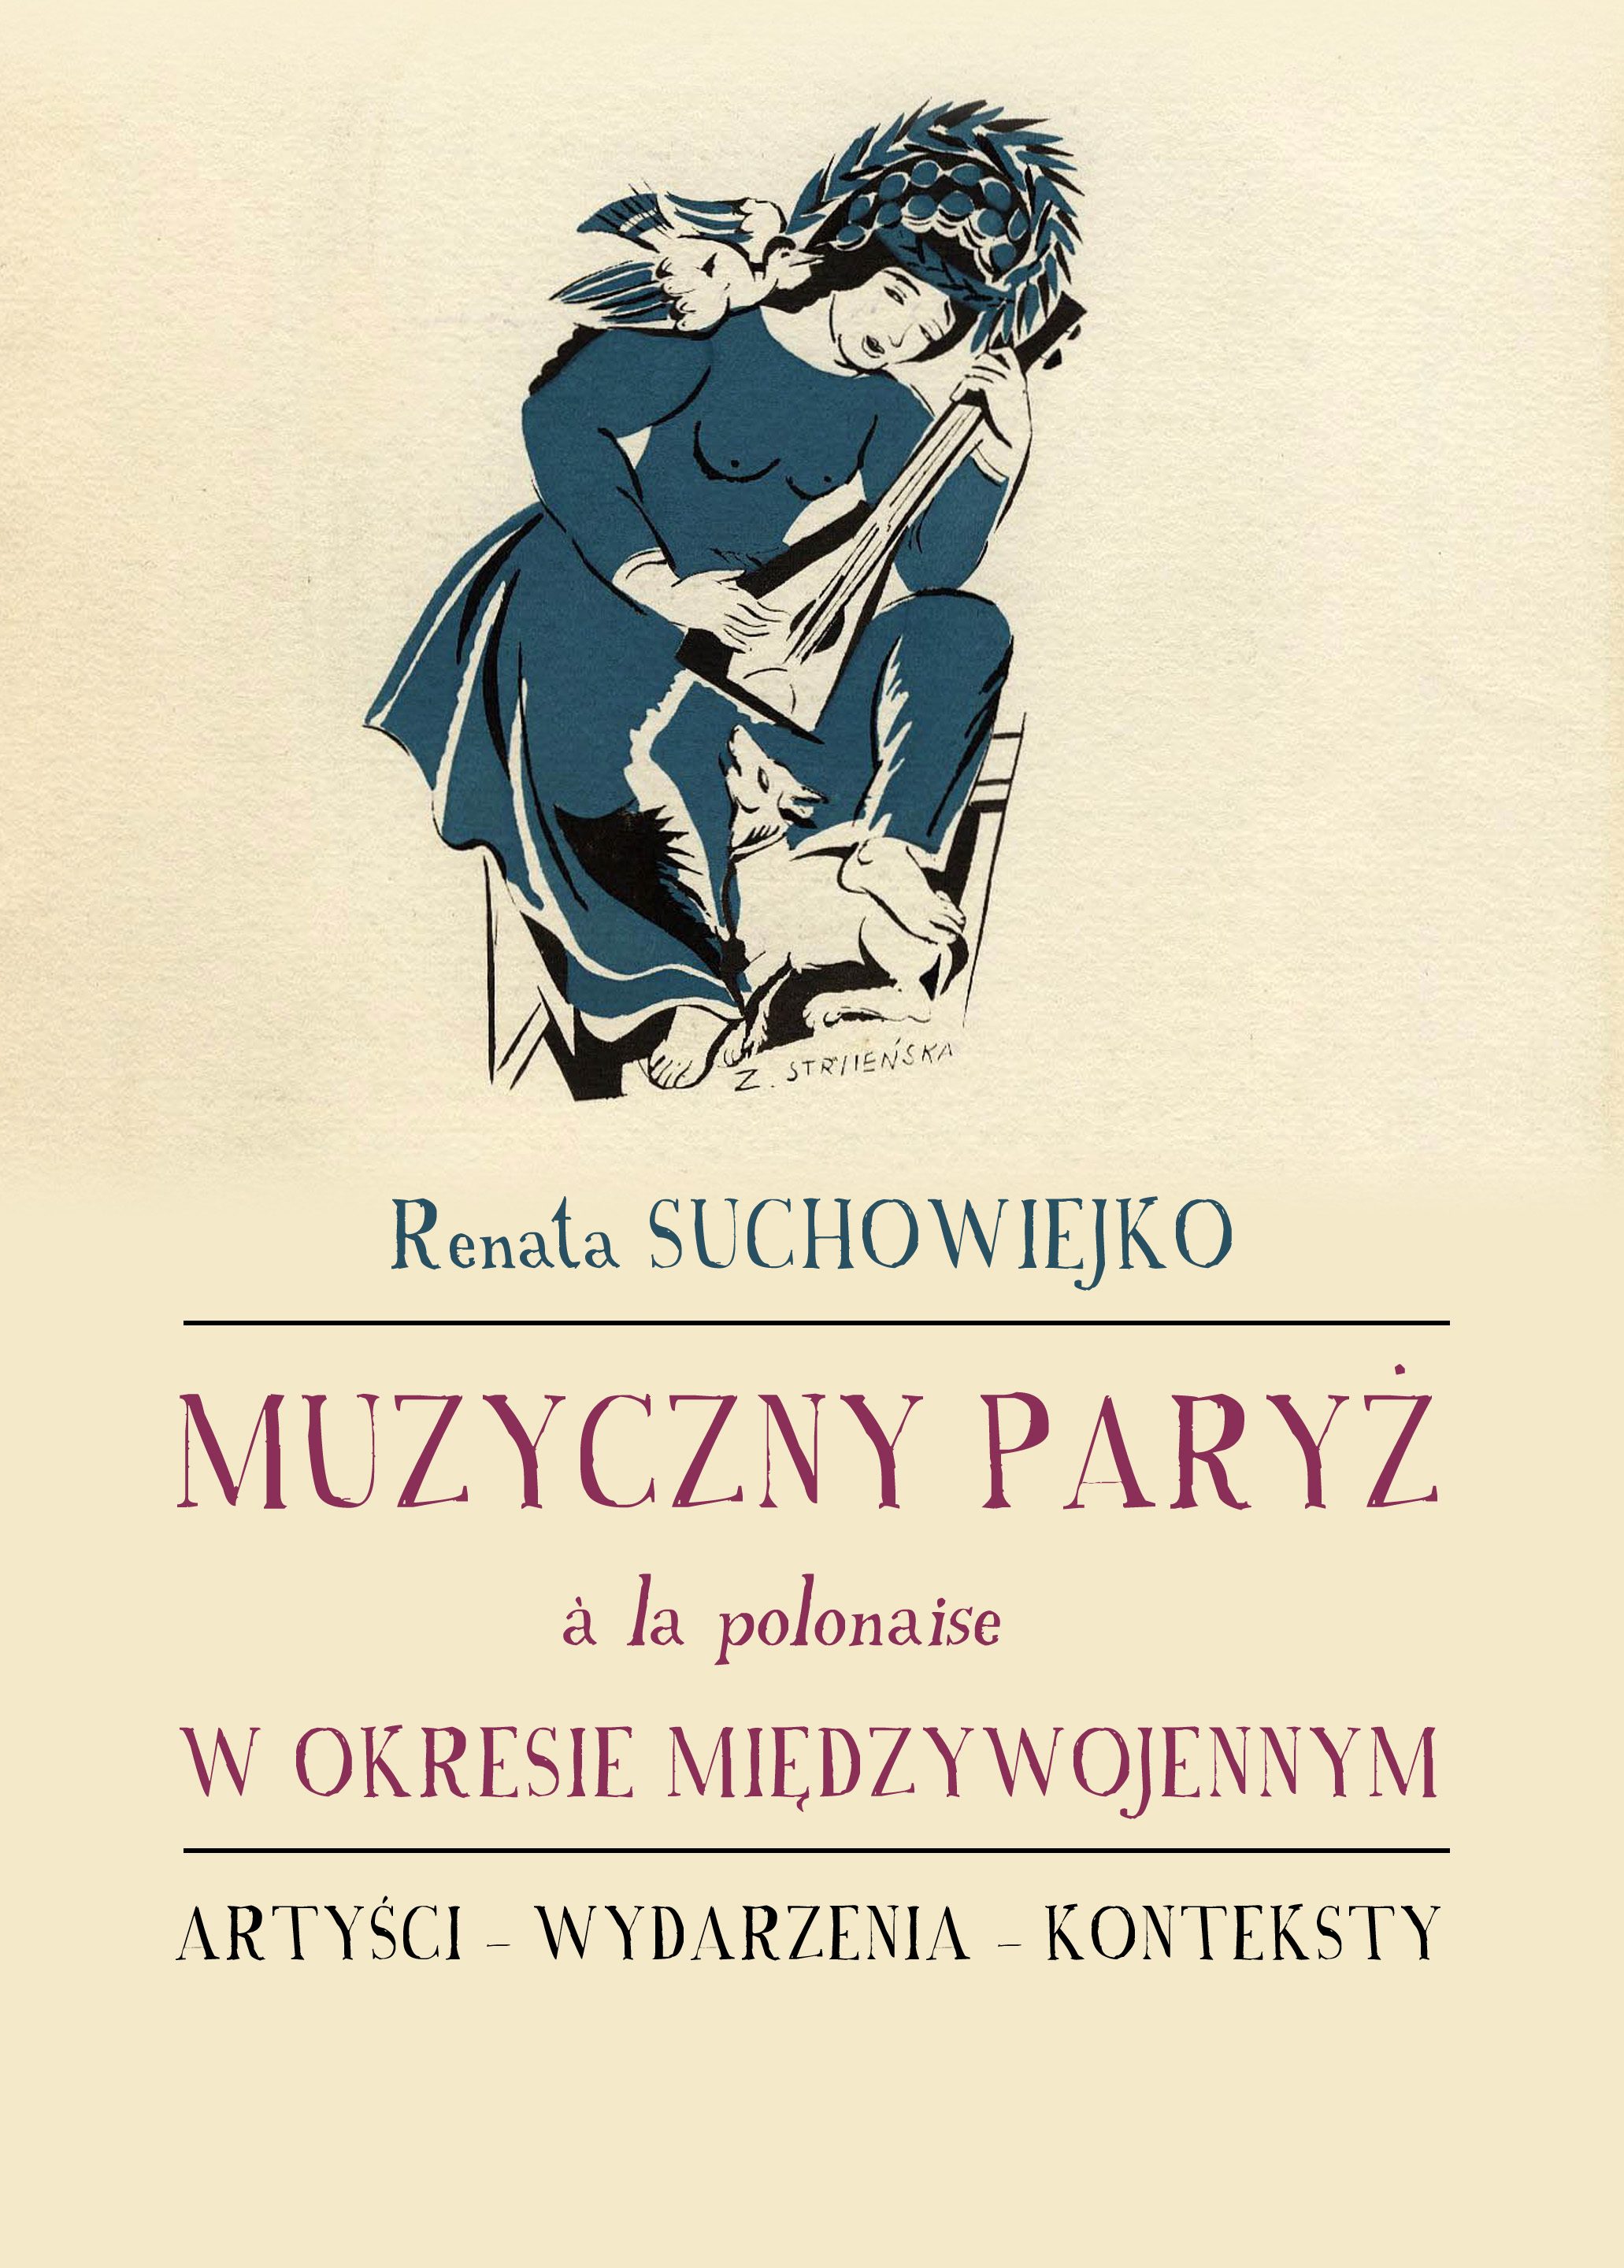 Okładka książki Renaty Suchowiejko, Muzyczny Paryż „à la polonaise” w okresie międzywojennym